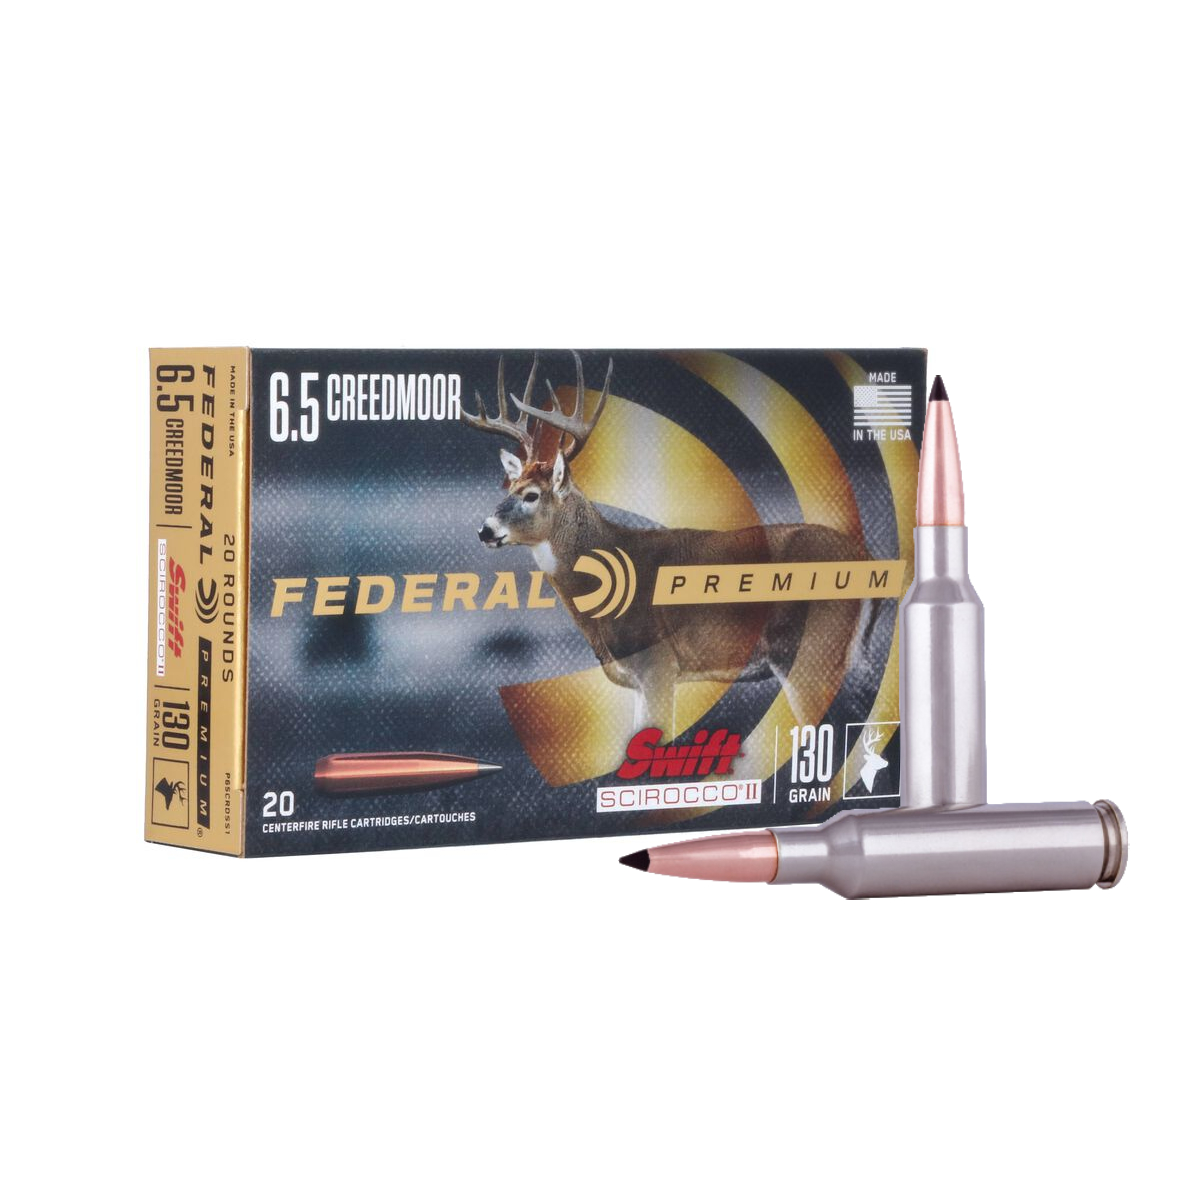 Federal Premium Scirocco II 6.5 Creedmoor 130 Gr. – 20 Rounds